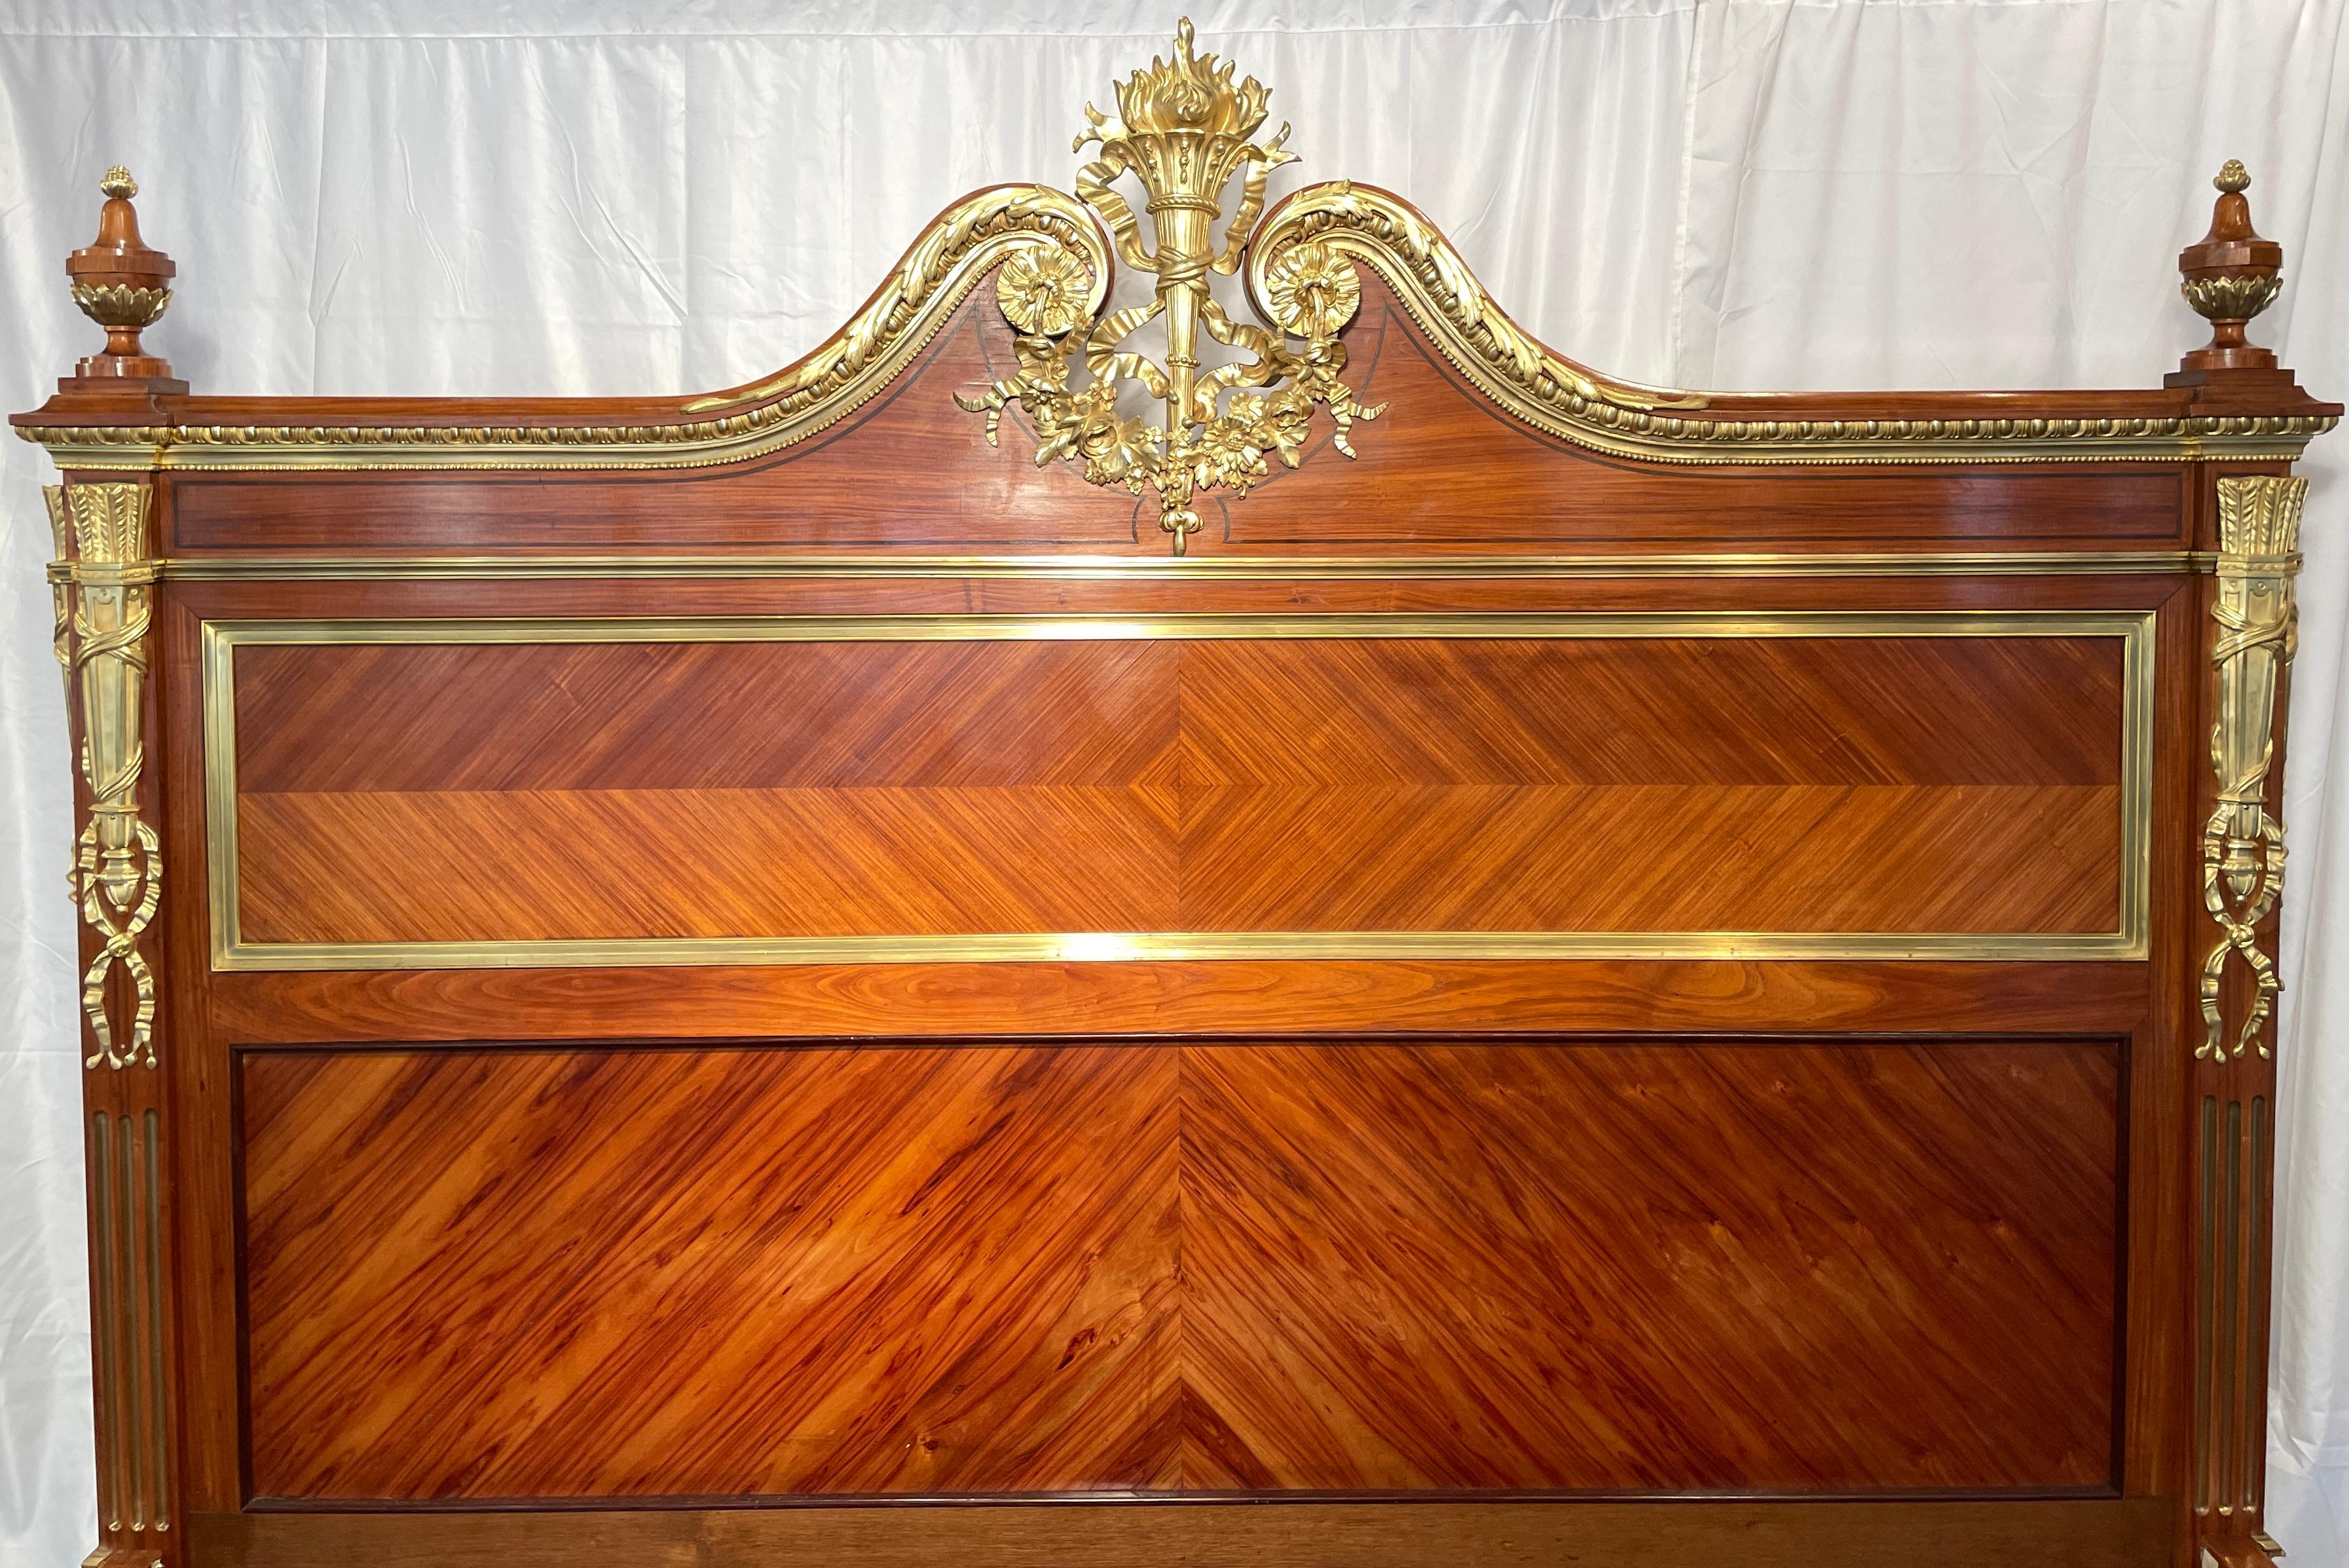 Außergewöhnliche antike französische Régence-Schlafzimmergarnitur aus Mahagoni mit Goldbronze, um 1875-1885. Master-Size-Bett, 2 Nachttische und ein Kleiderschrank. 
Abmessungen: 
Bett außen: 63 Zoll hoch x 70,5 Zoll breit x 83 Zoll tief